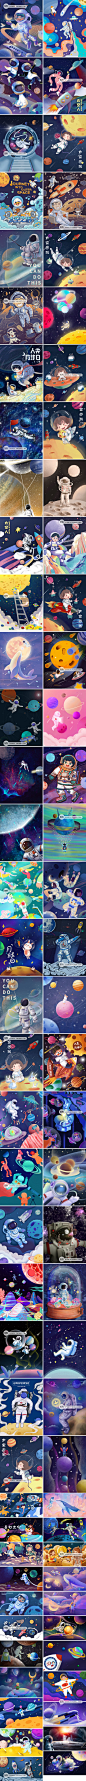 太空傲游宇宙宇航员飞船星球场景手绘插画海报PSD设计素材图